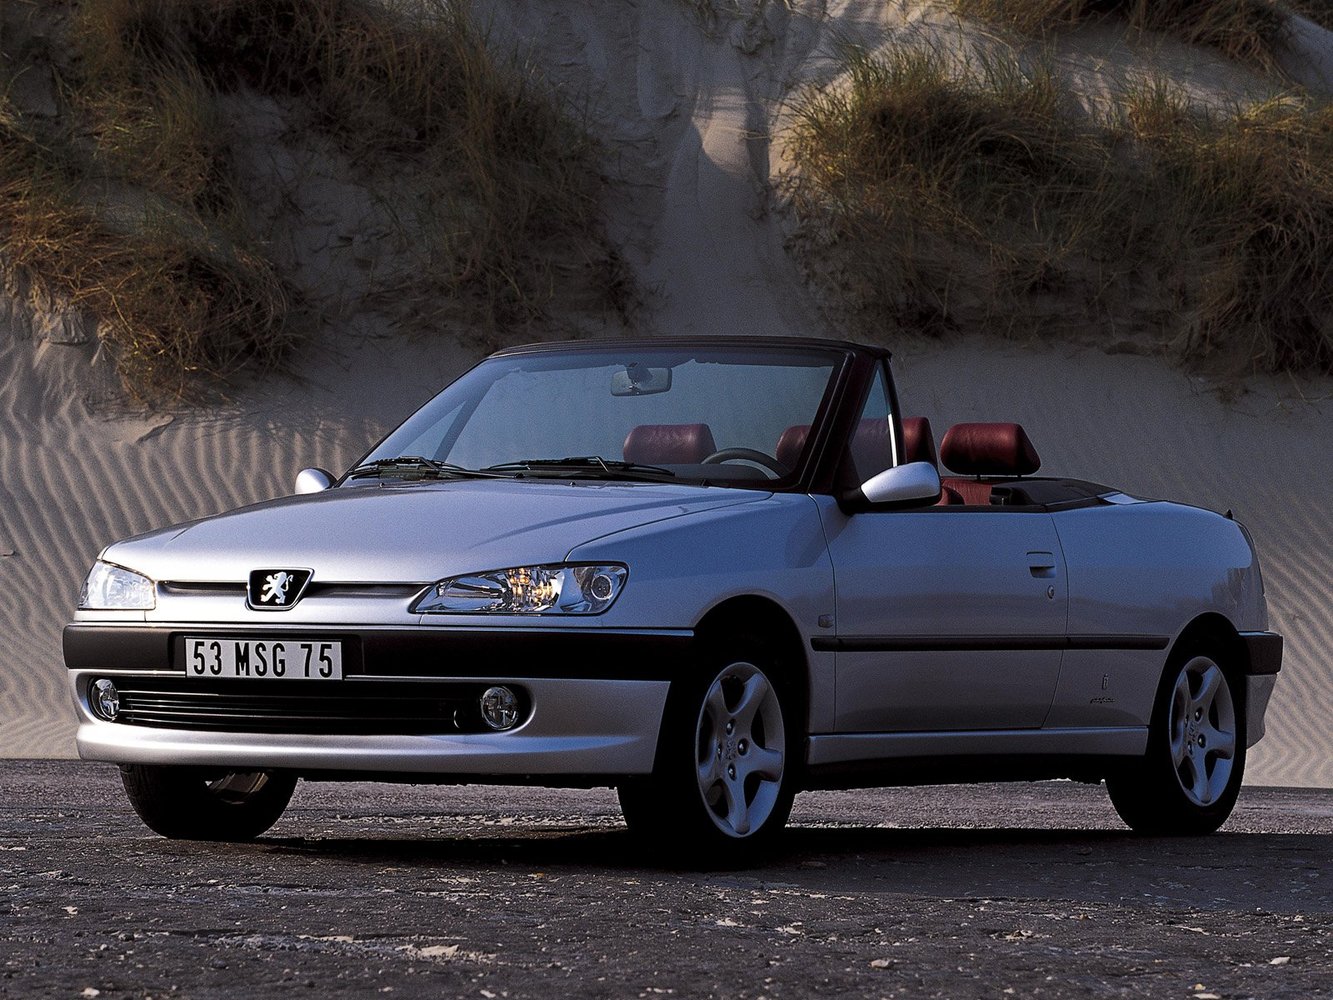 Peugeot 306 1993 - 2003